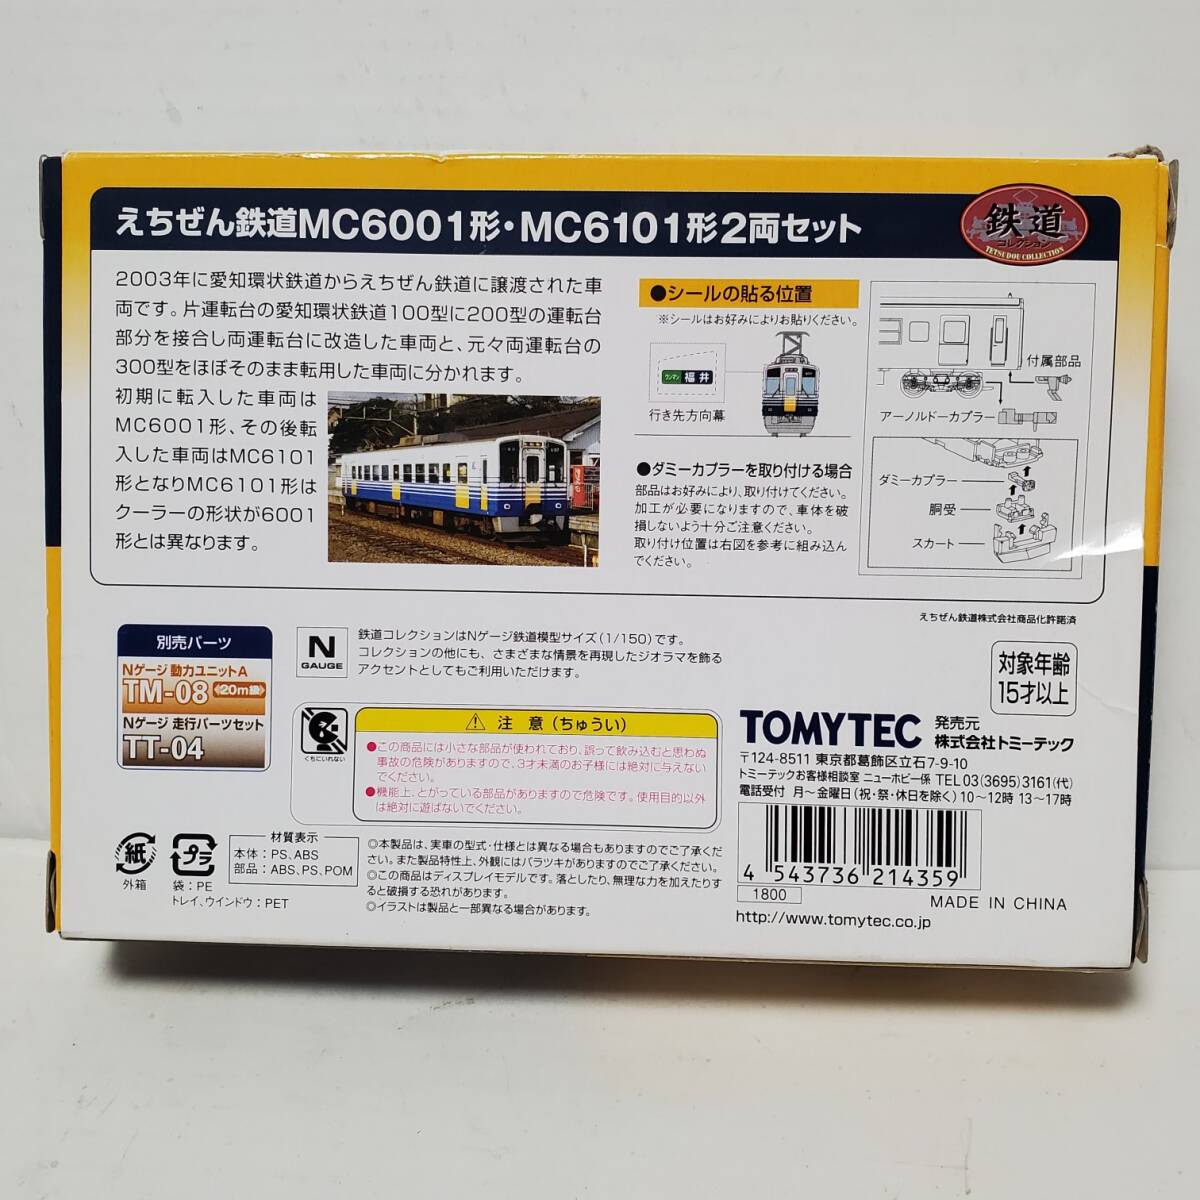 TOMYTEC железная дорога коллекция .... железная дорога MC6001 форма *MC6101 форма 2 обе комплект не использовался товар 